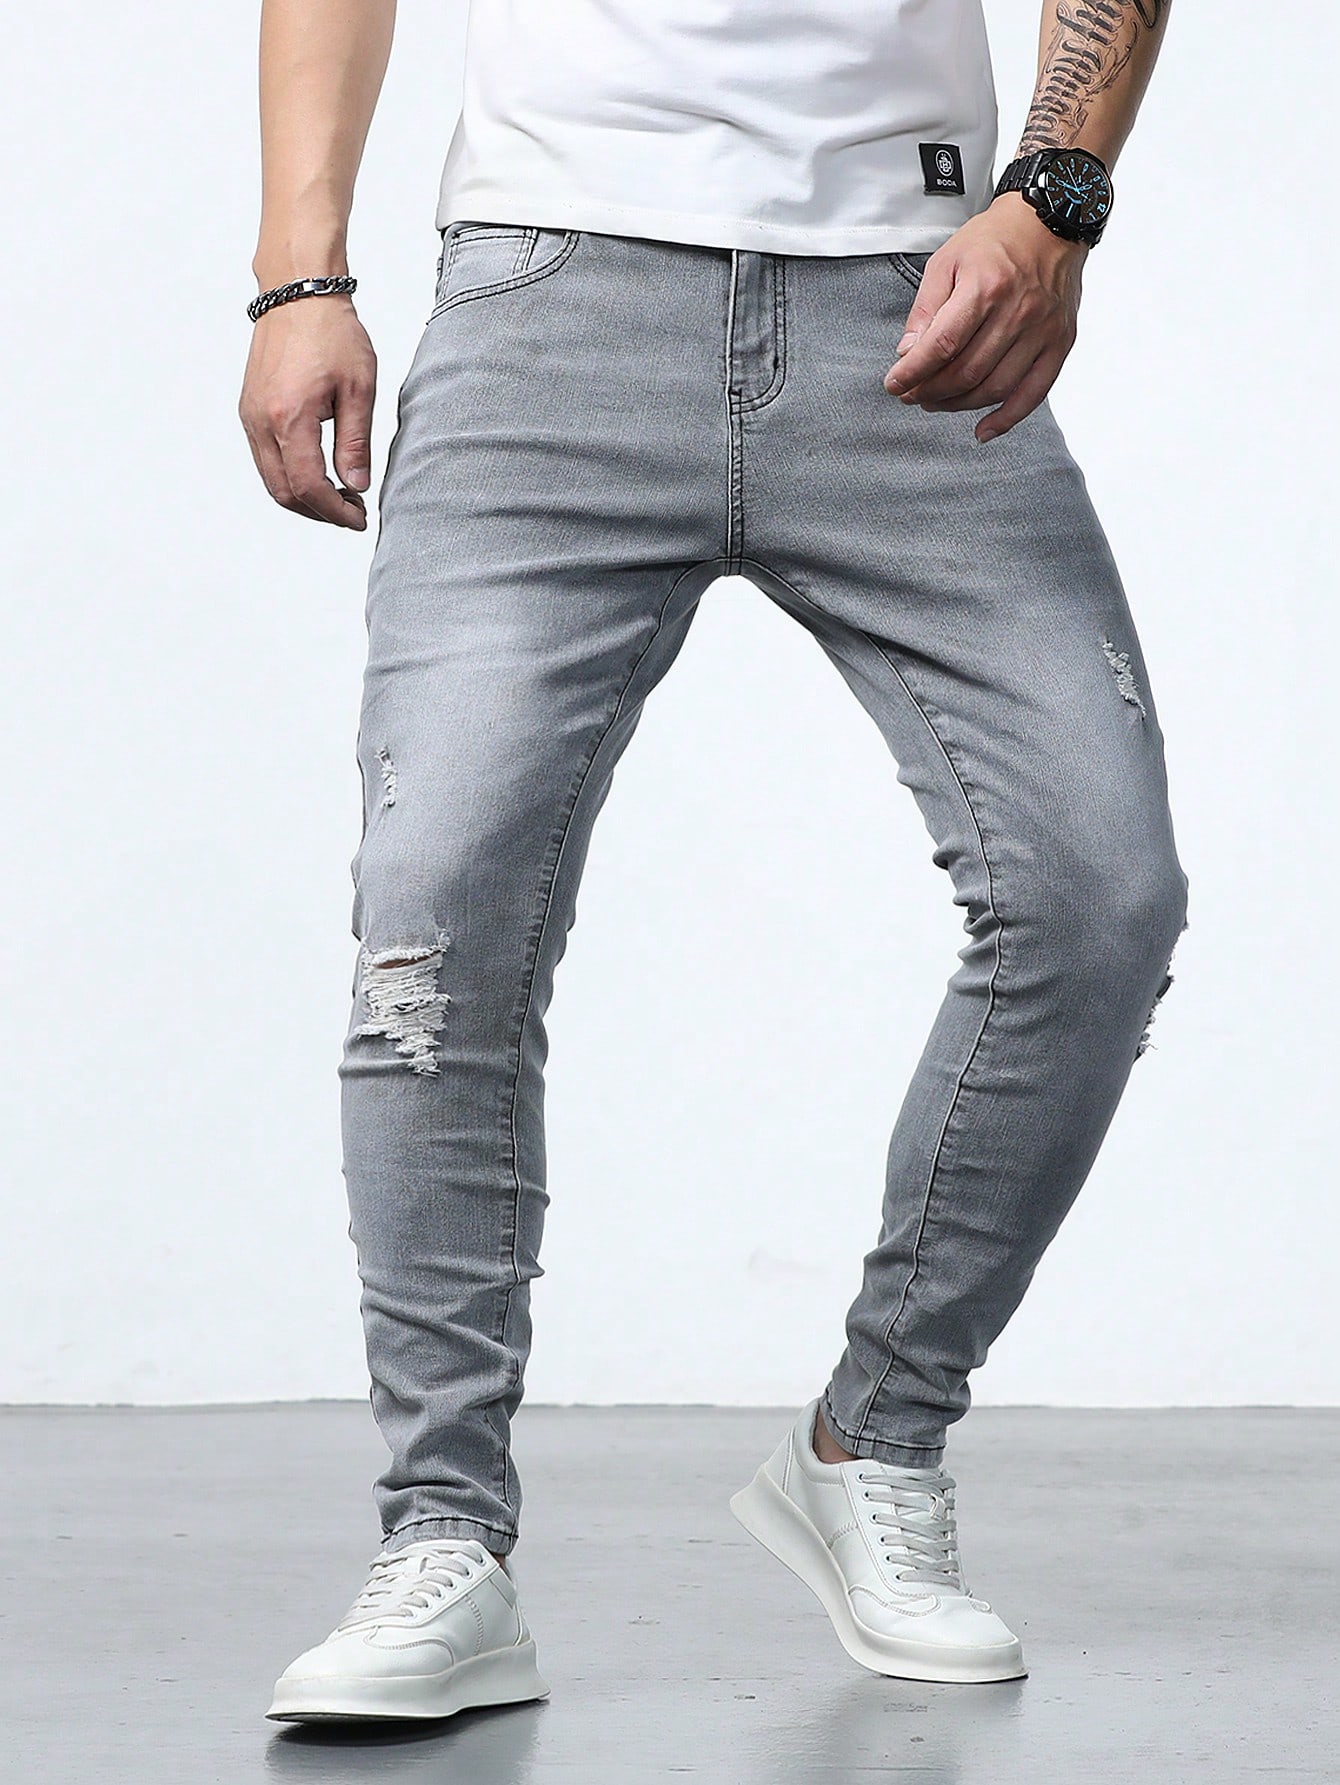 Мужские джинсы скинни с потертостями Manfinity Homme, серый джинсы top feel с потертостями 44 размер